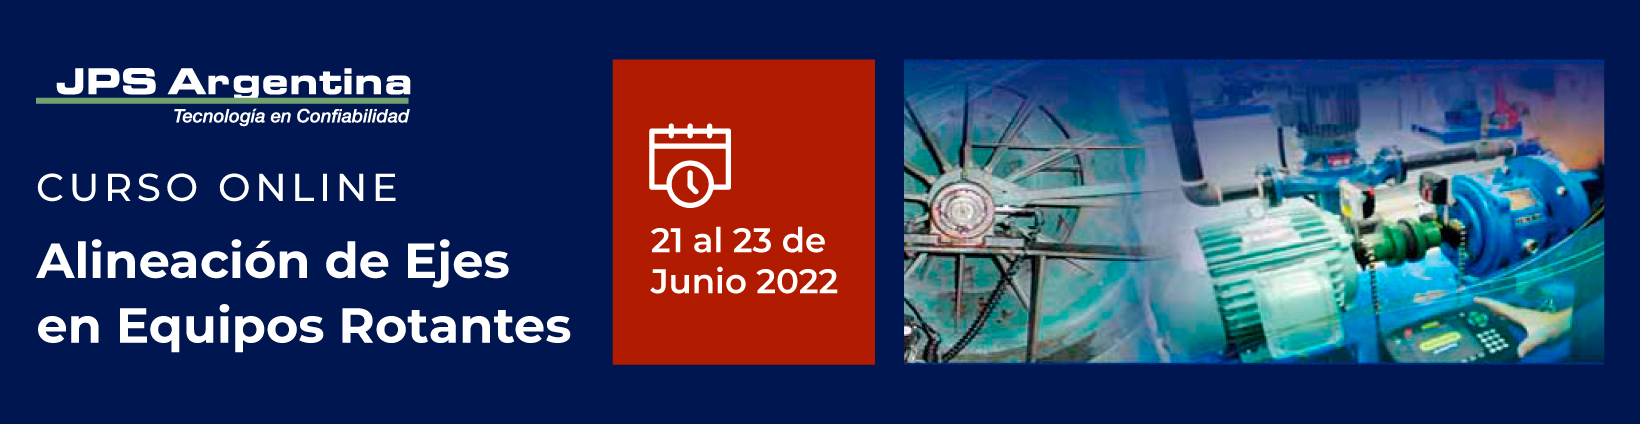 CURSO ONLINE 21 AL 23 DE JUNIO 2022 – ALINEACION DE EJES EN EQUIPOS ROTANTES